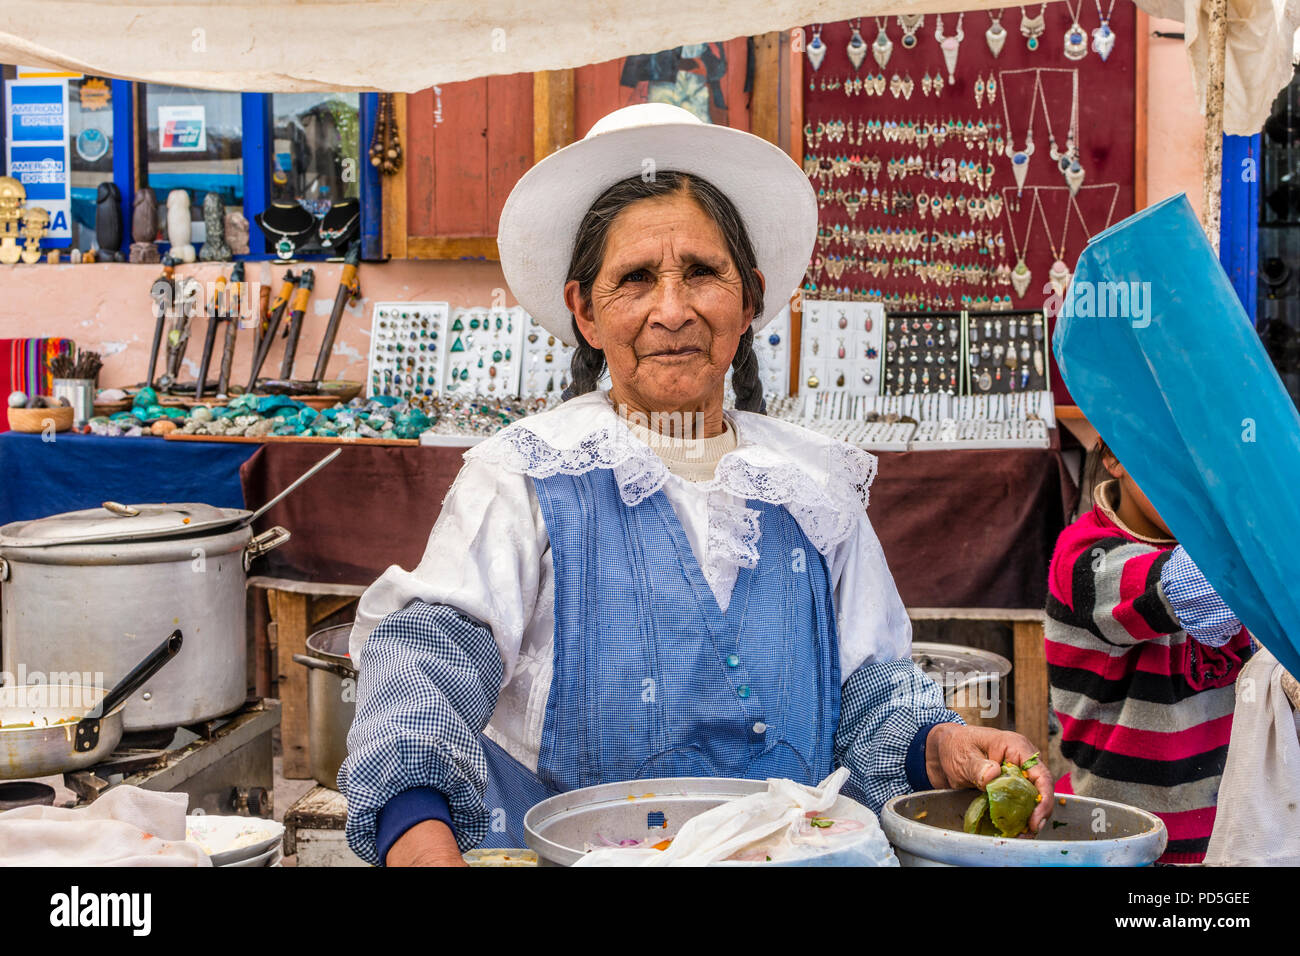 Lokale Reife der peruanischen Frau mit Zöpfen und Hut, bereitet das Essen in den lokalen Markt in Pisac, Peru, Südamerika. Stockfoto